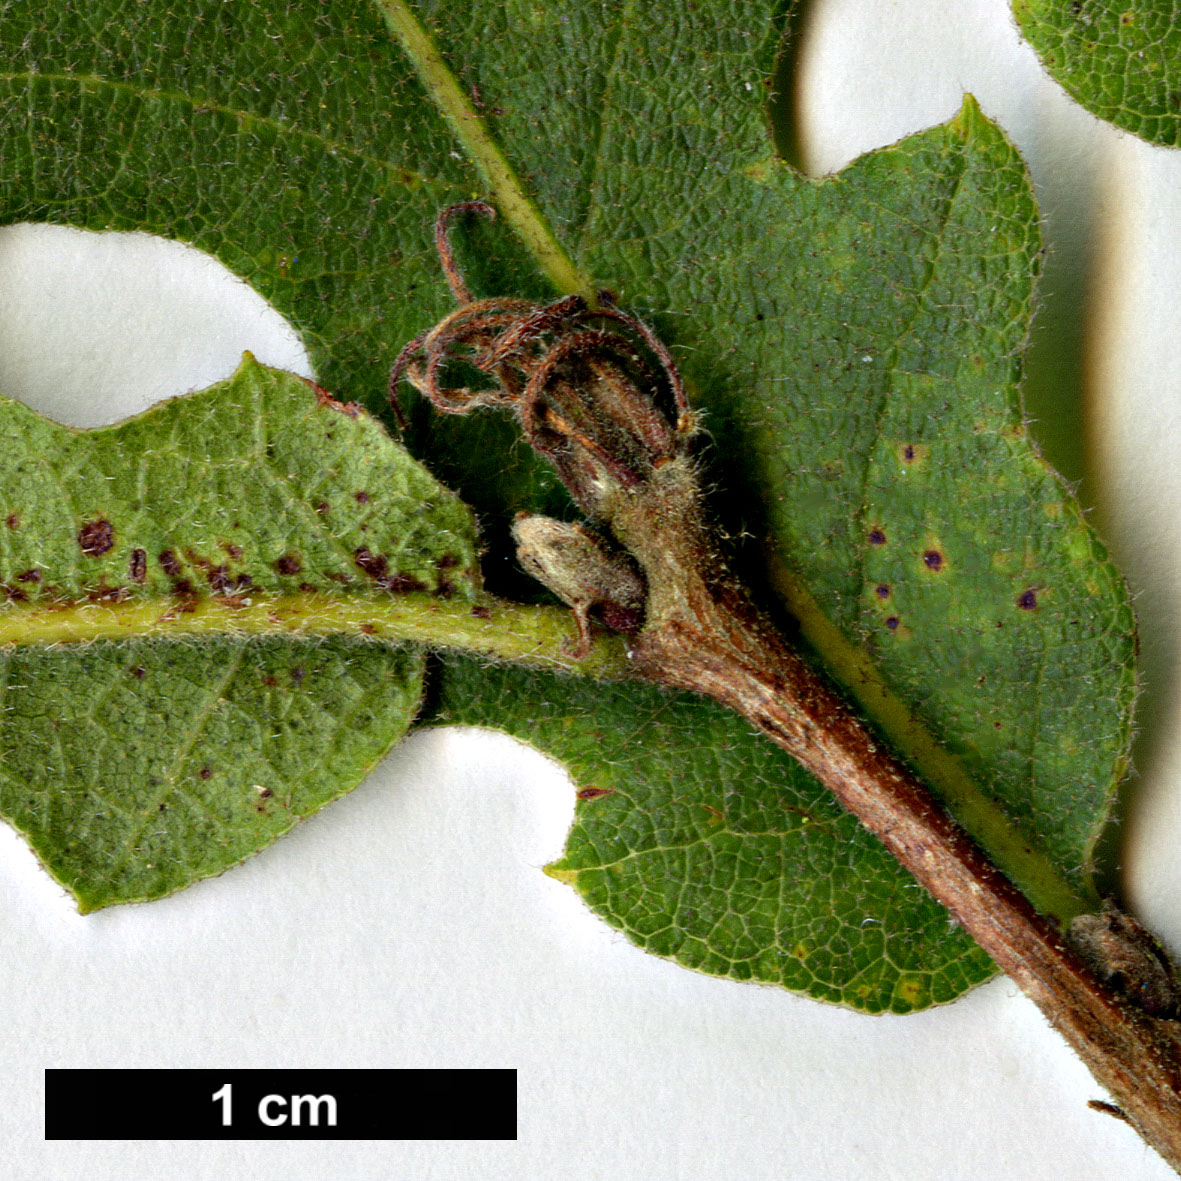 High resolution image: Family: Fagaceae - Genus: Quercus - Taxon: cerris 